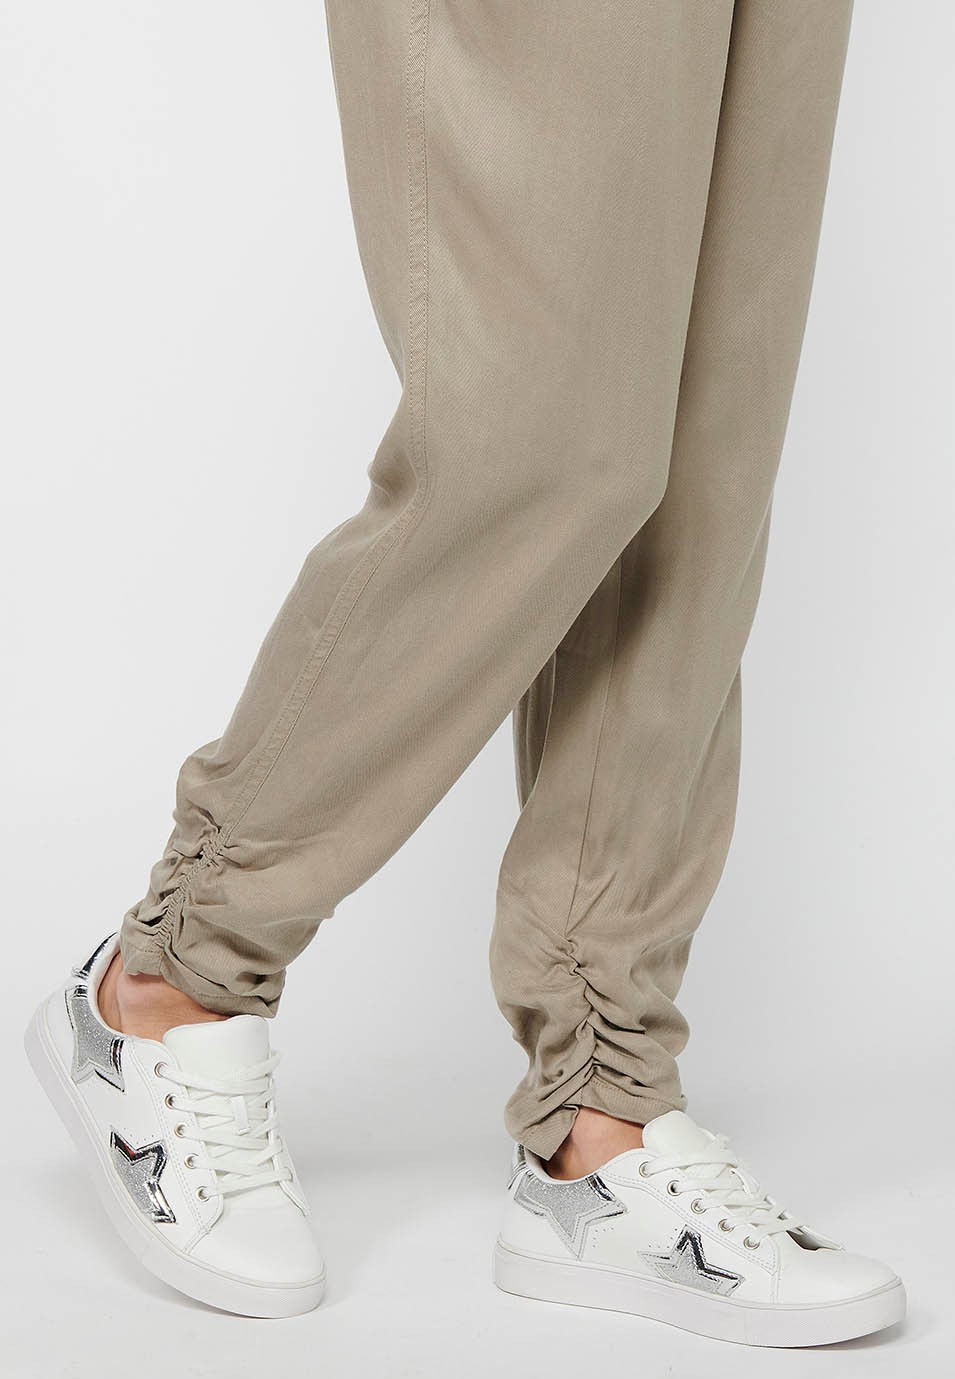 Pantalon de jogging long finition bouclée et taille caoutchoutée avec quatre poches, deux poches arrière à rabat en Gris pour Femme 7